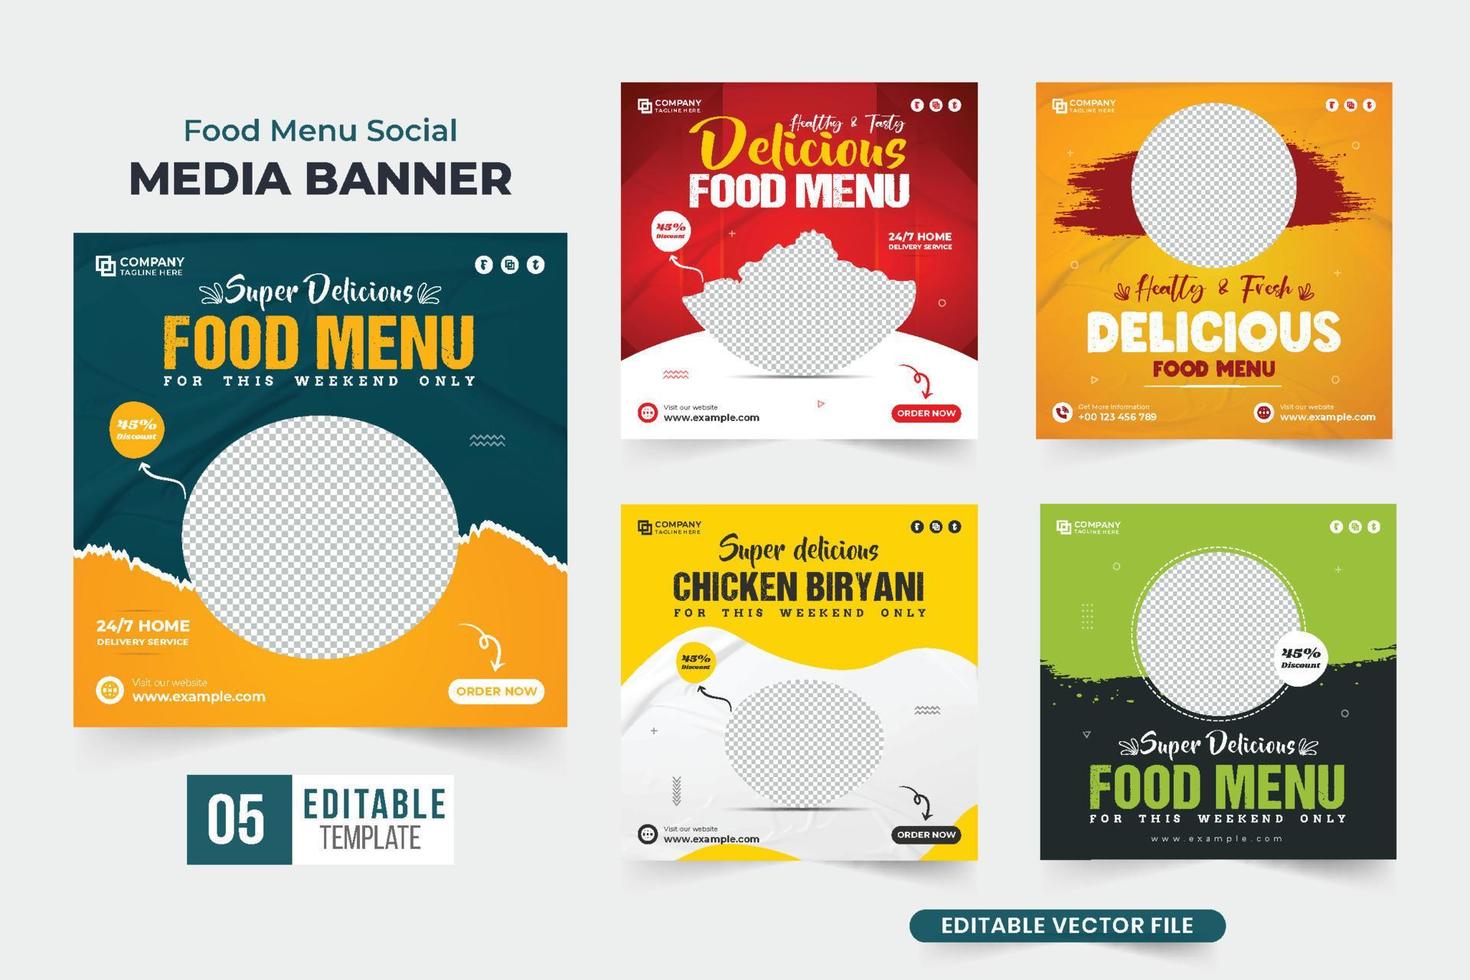 ensemble d'affiches publicitaires de menu de nourriture de restaurant avec des couleurs jaunes et bleues. ensemble de bannières web promotionnelles pour les entreprises culinaires pour le marketing des médias sociaux. collection de modèles de réduction de menu alimentaire. vecteur